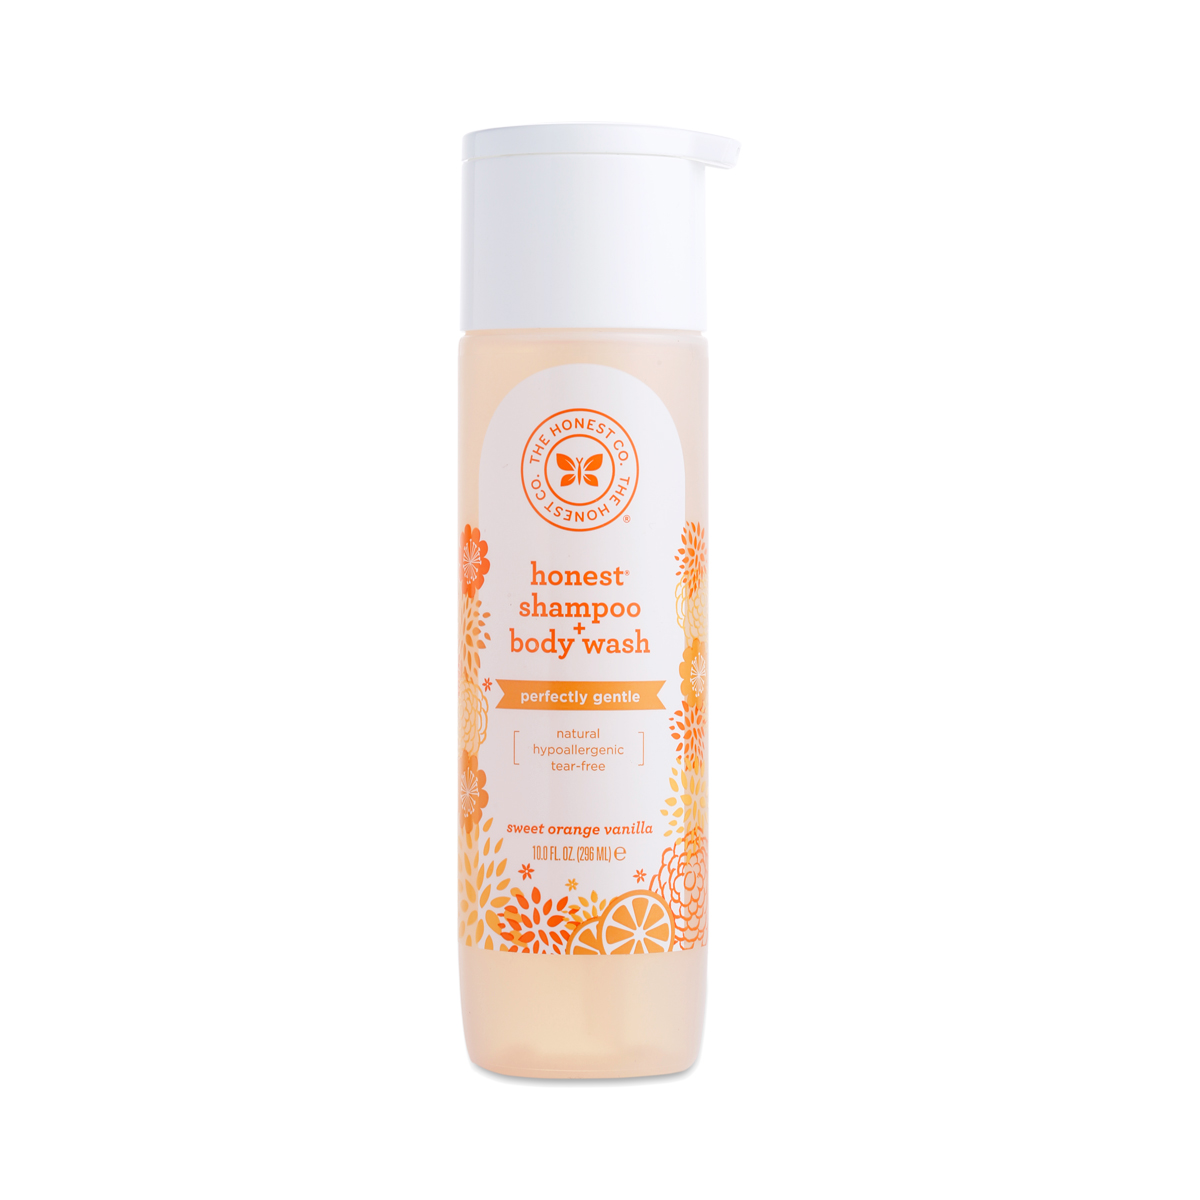 The Honest Co. Shampoo & Body Wash, Sweet Orange Vanilla 10 oz bottle